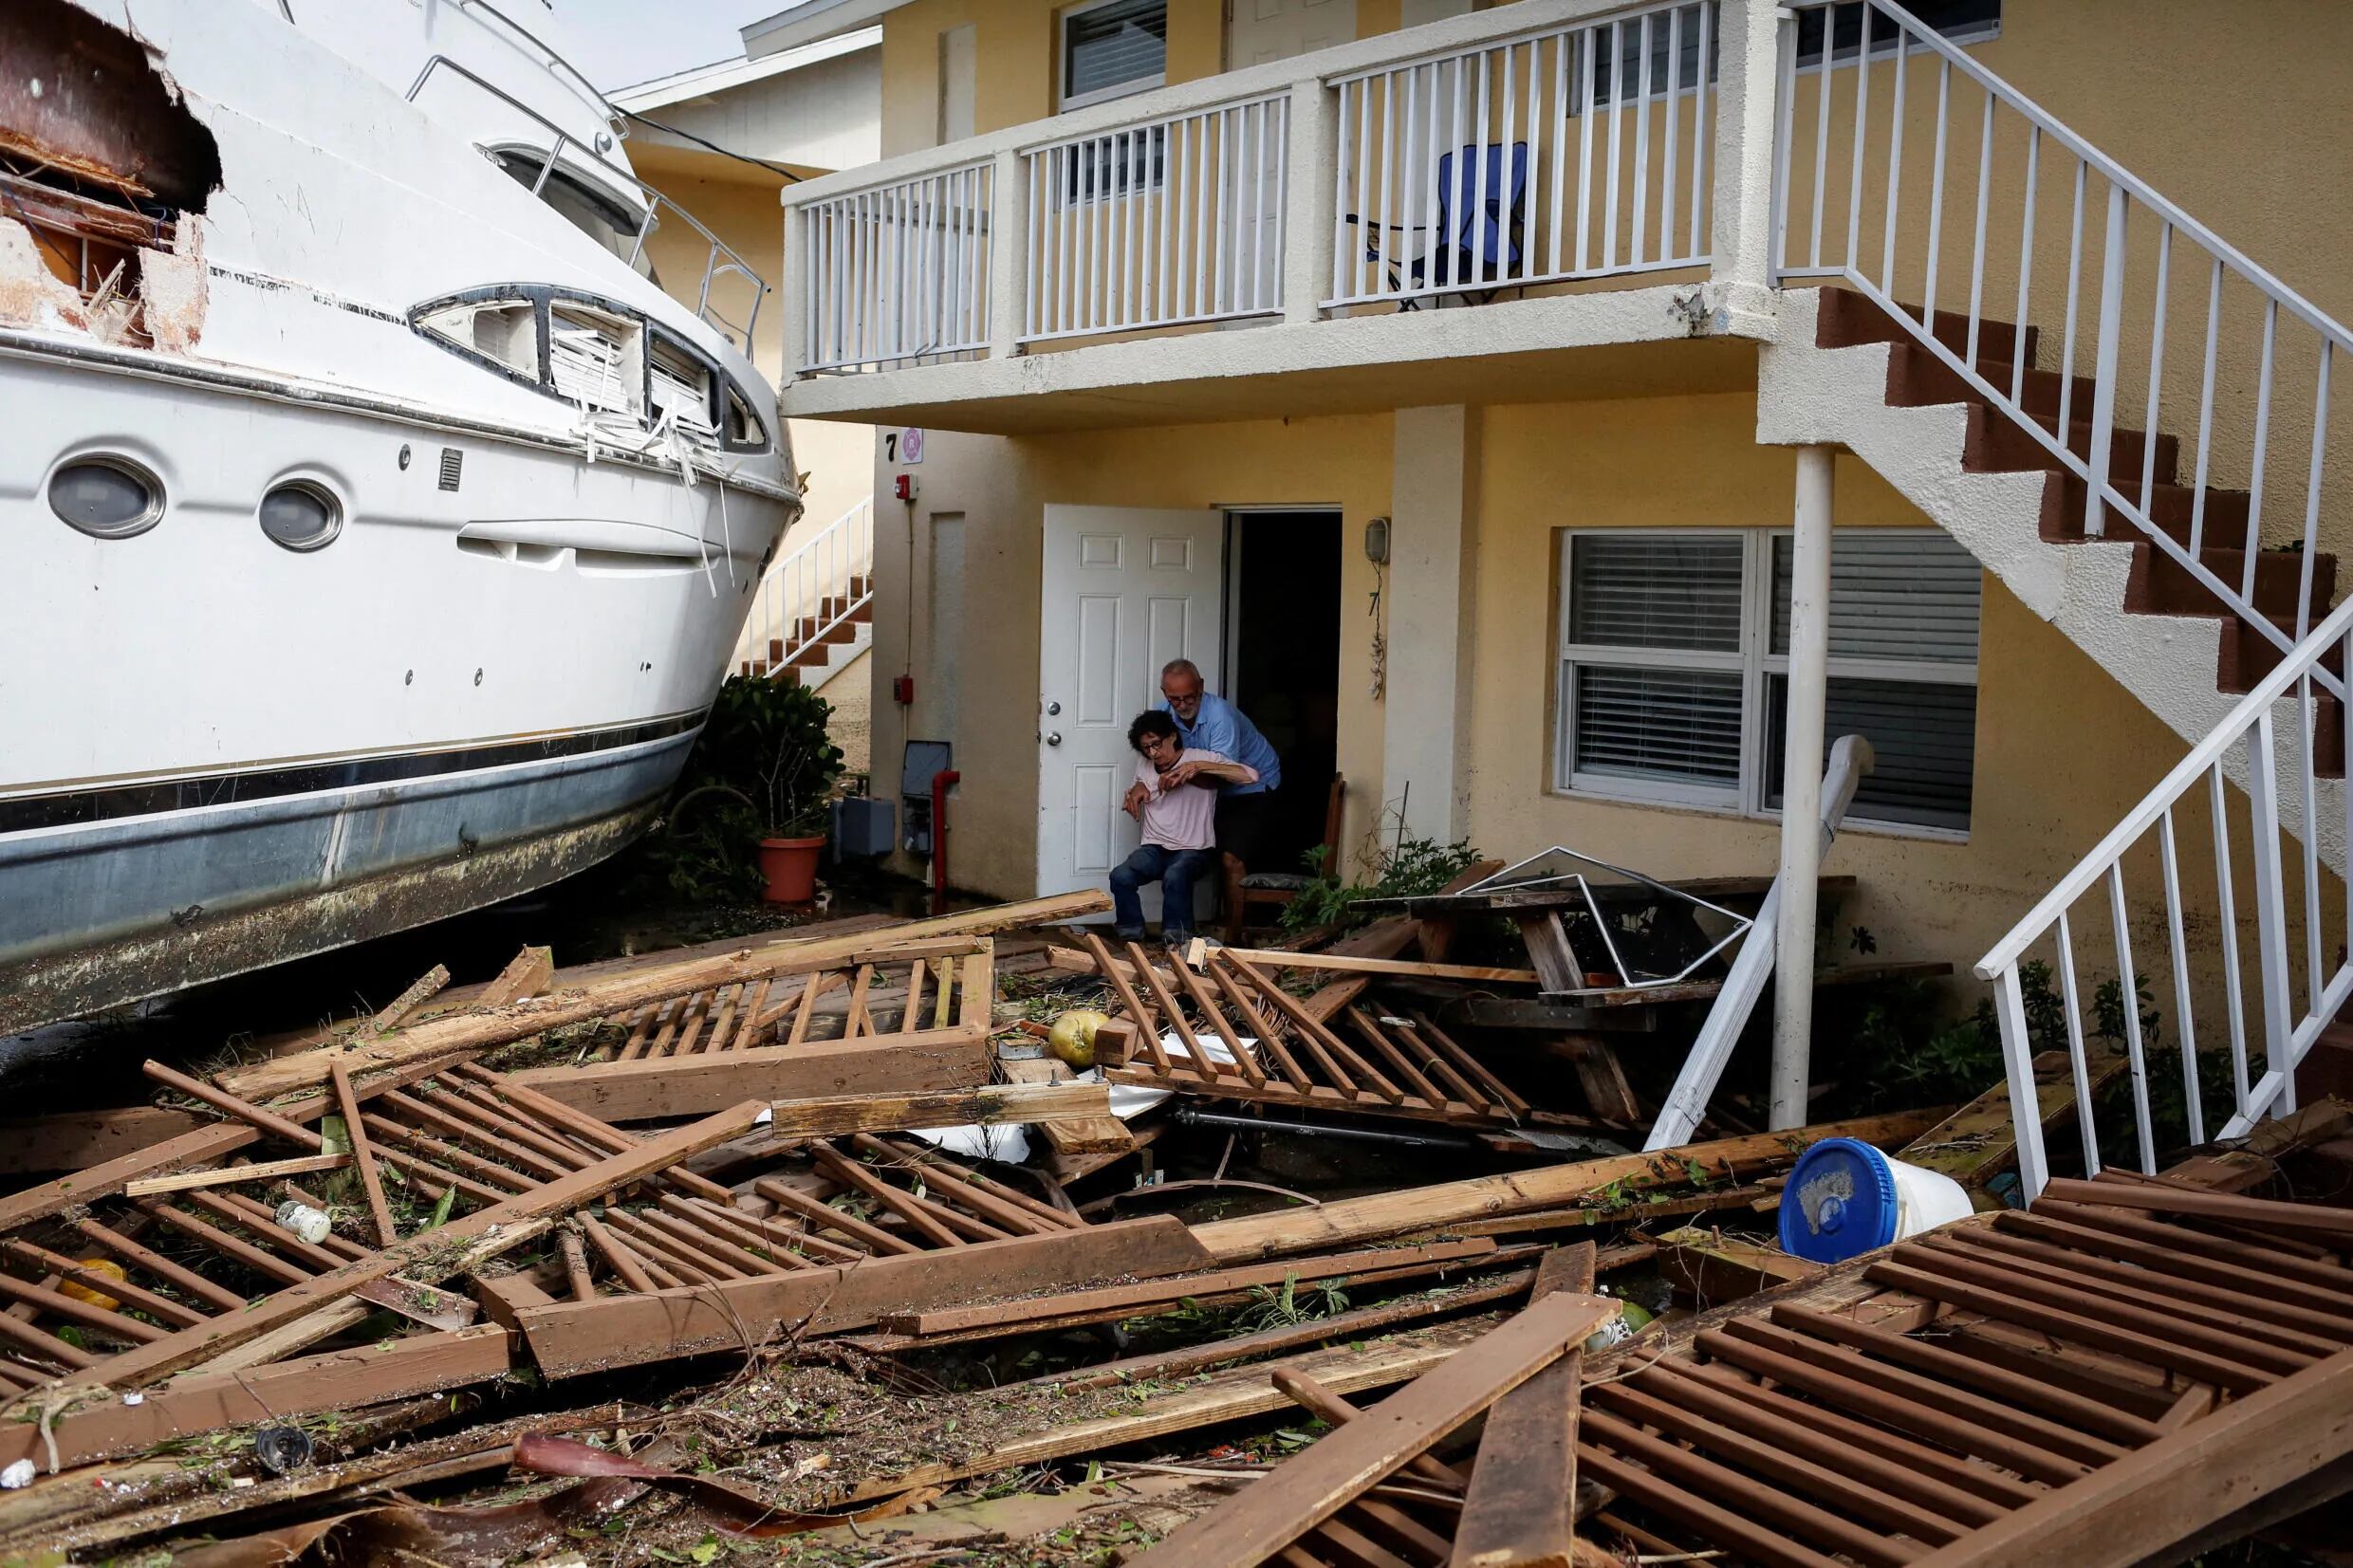 Un hombre ayuda a una mujer junto a un barco dañado en medio de un condominio del centro de la ciudad después de que el huracán Ian causara una amplia destrucción, en Fort Myers, Florida, Estados Unidos, el 29 de septiembre de 2022.